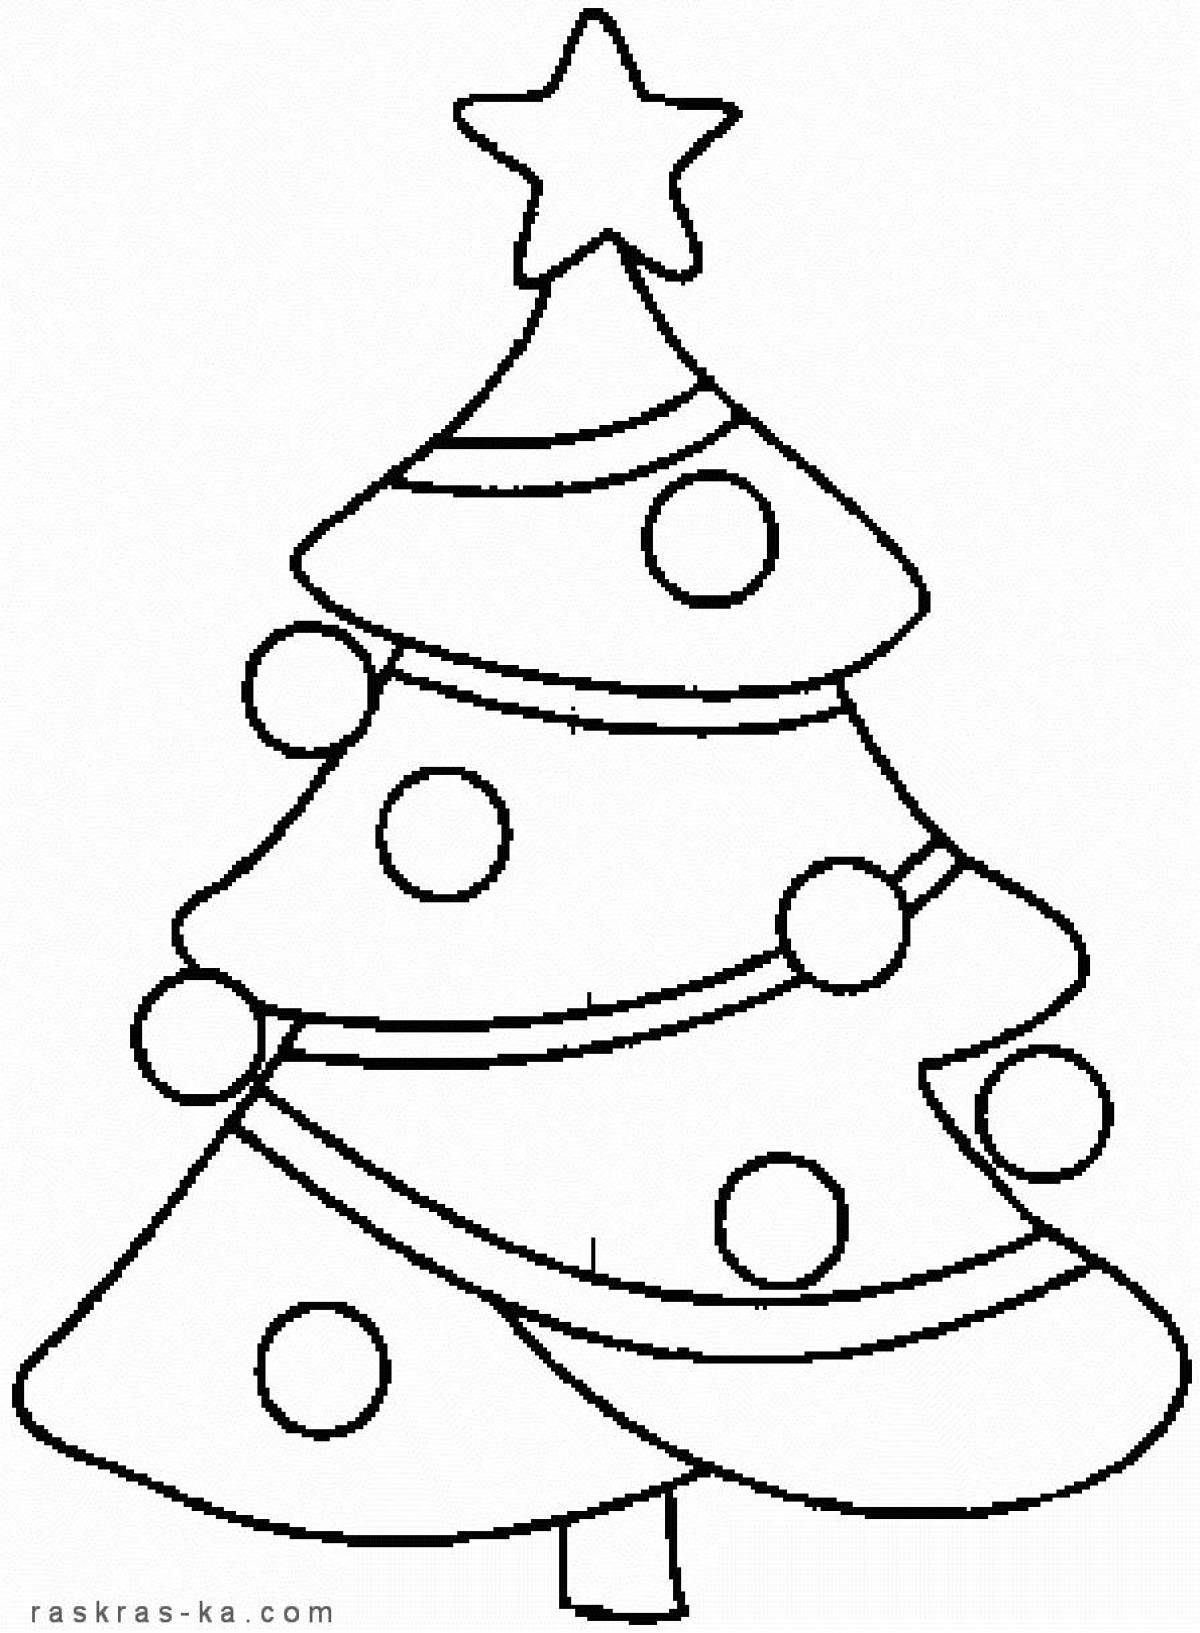 Очаровательная раскраска рождественской елки для детей 2-3 лет